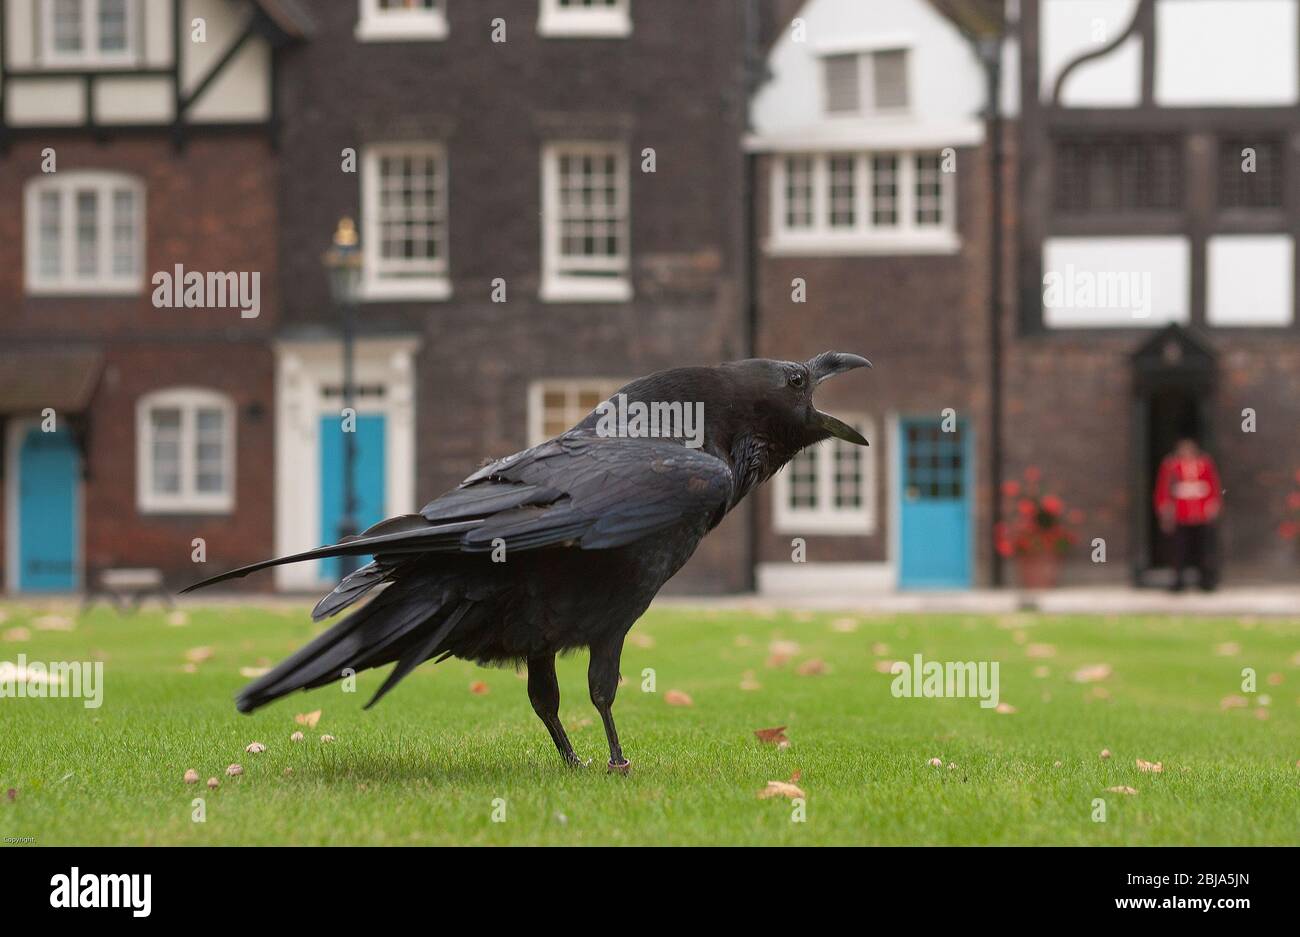 L'un des célèbres corbeaux noirs de la Tour de Londres perché dans une cour intérieure du Palais Royal historique, UNESCO, Londres, Angleterre, Royaume-Uni Banque D'Images